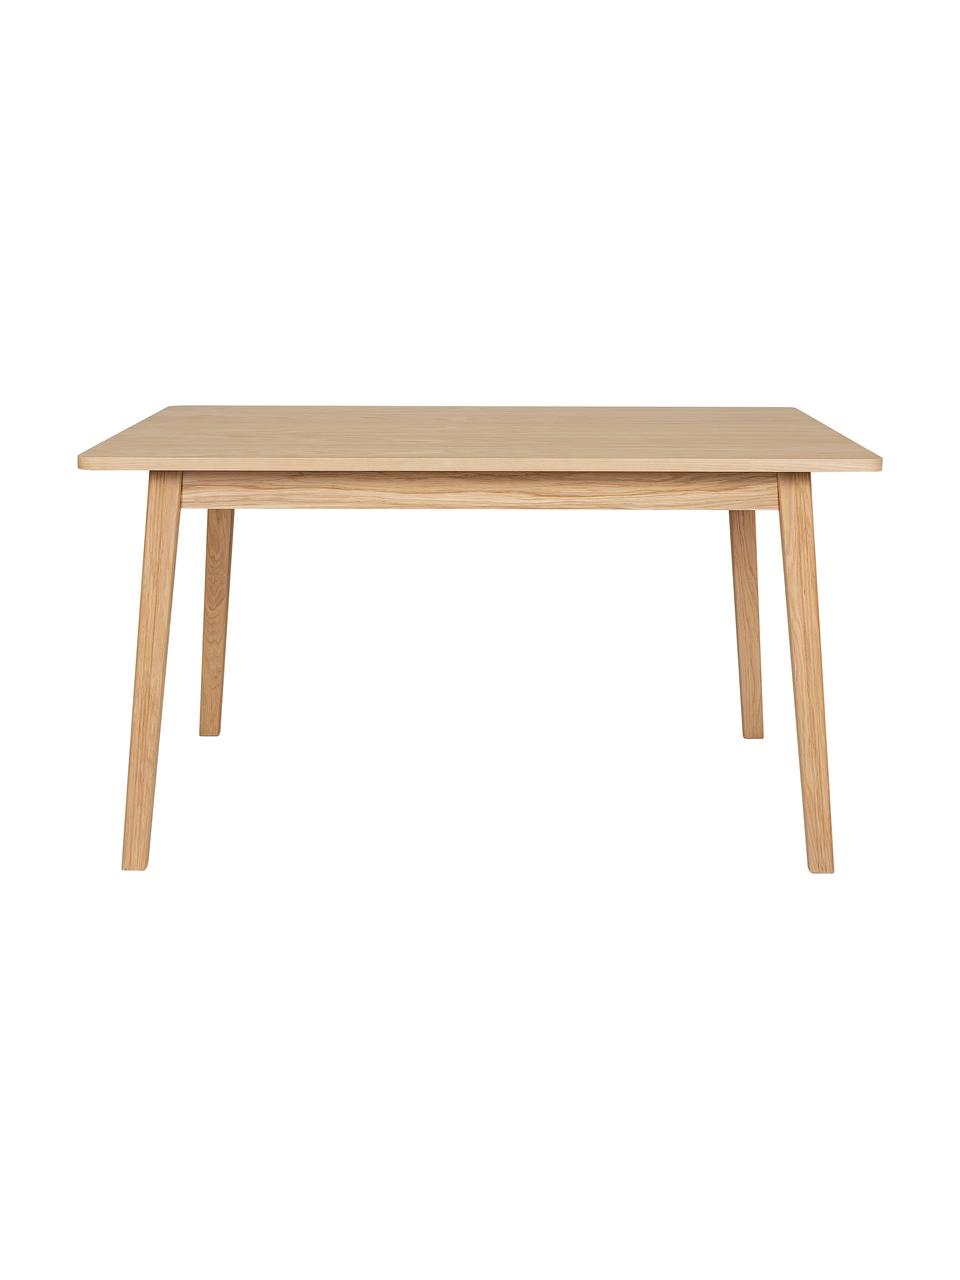 Table de salle à manger en bois Skagen, 180 - 90 cm, Bois de chêne, larg. 180 x prof. 90 cm